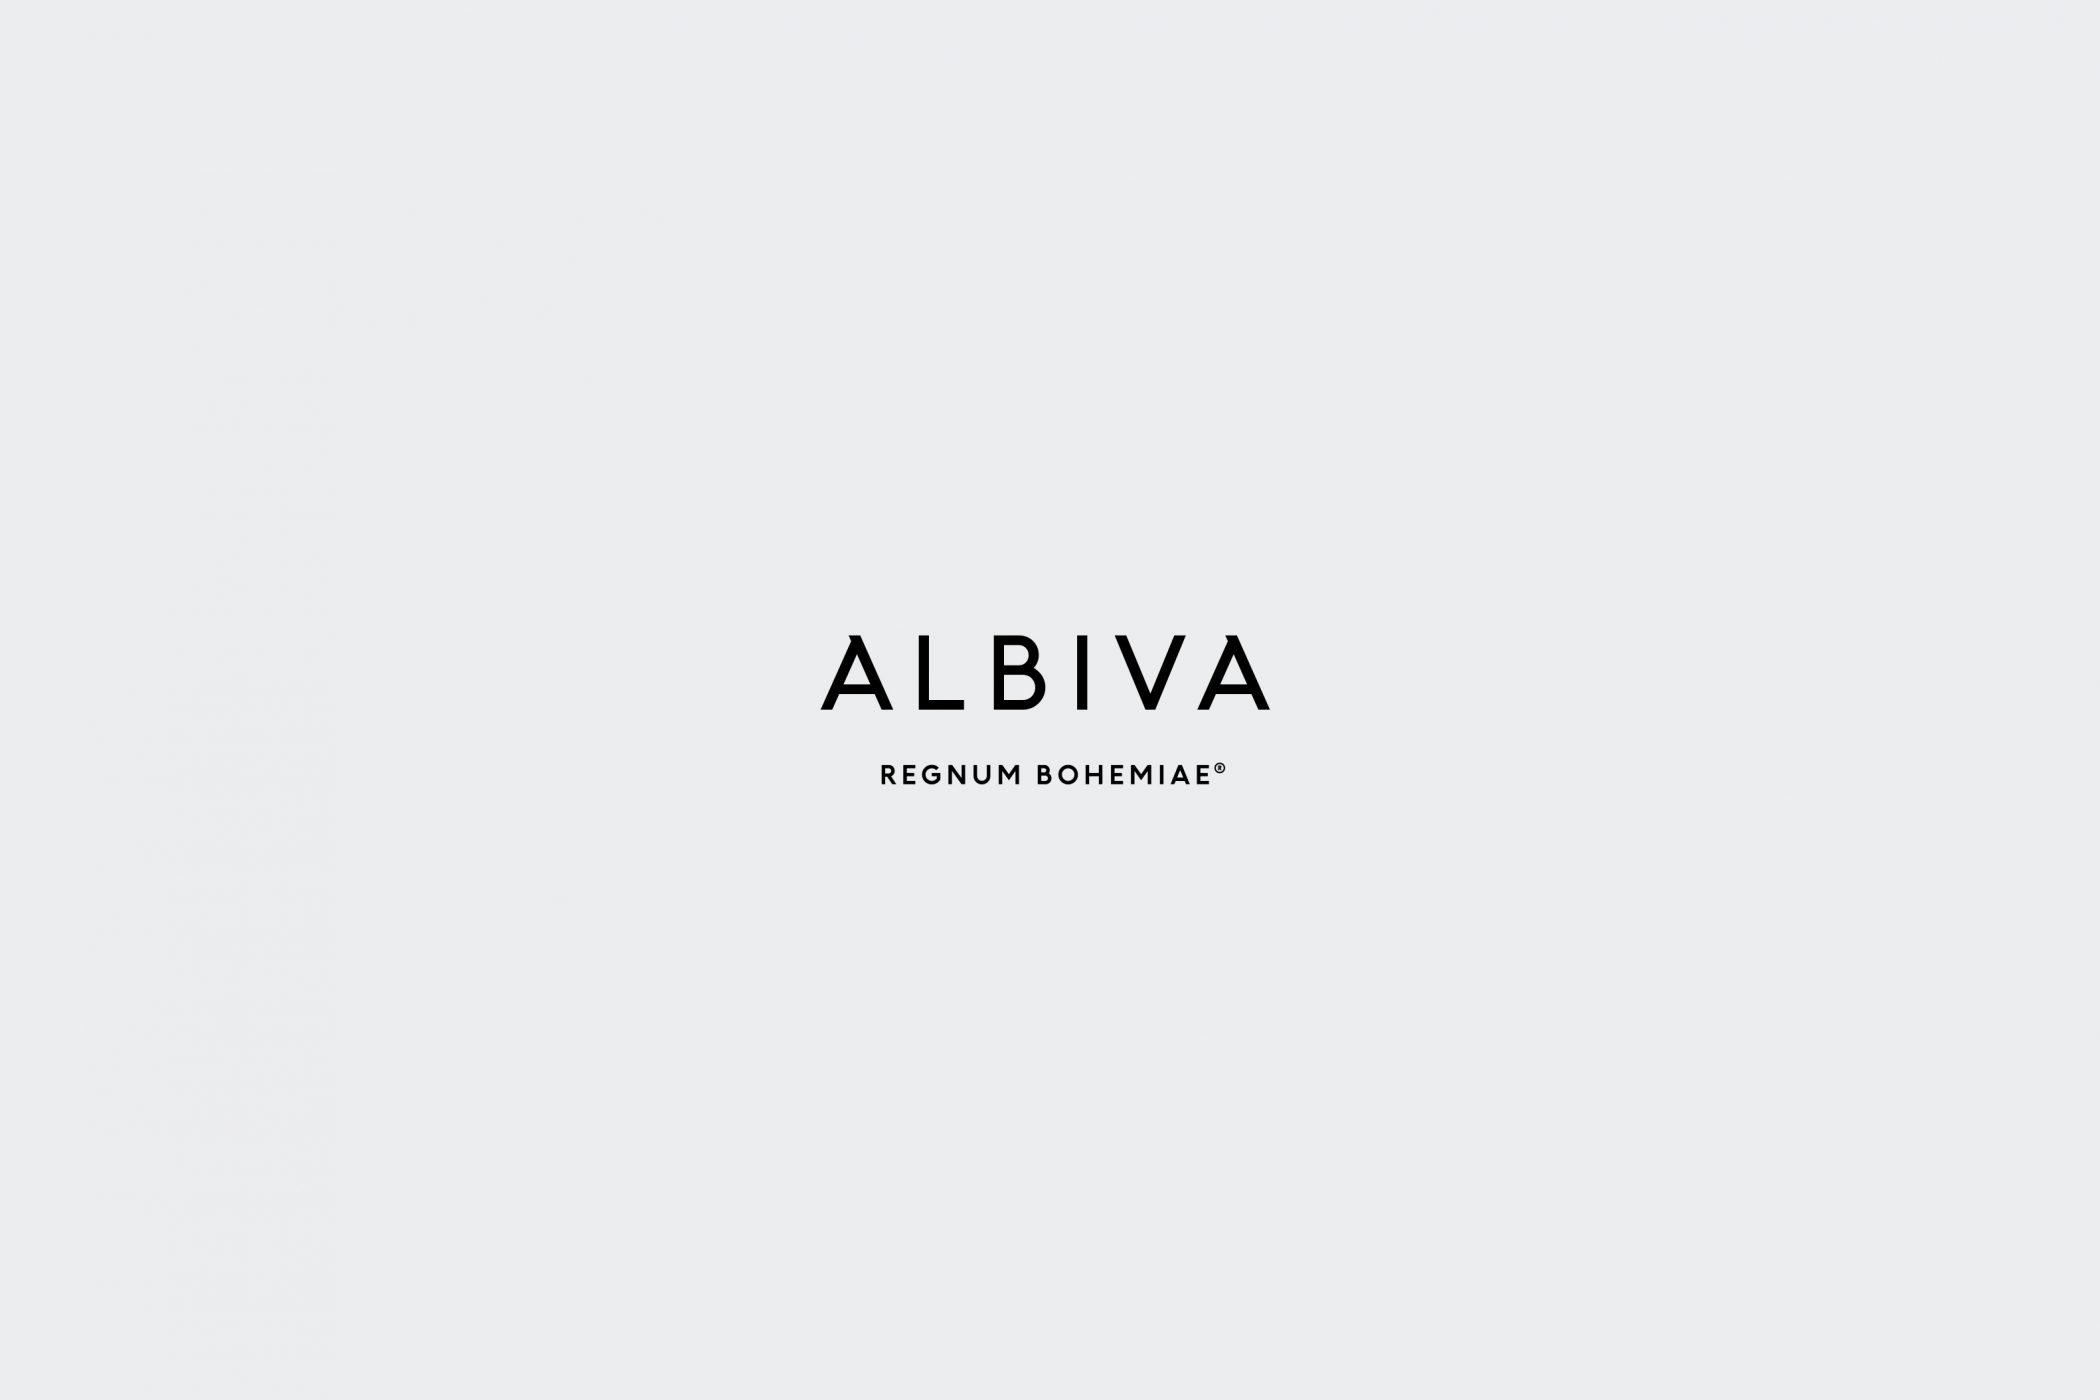 Albiva Logotype 01